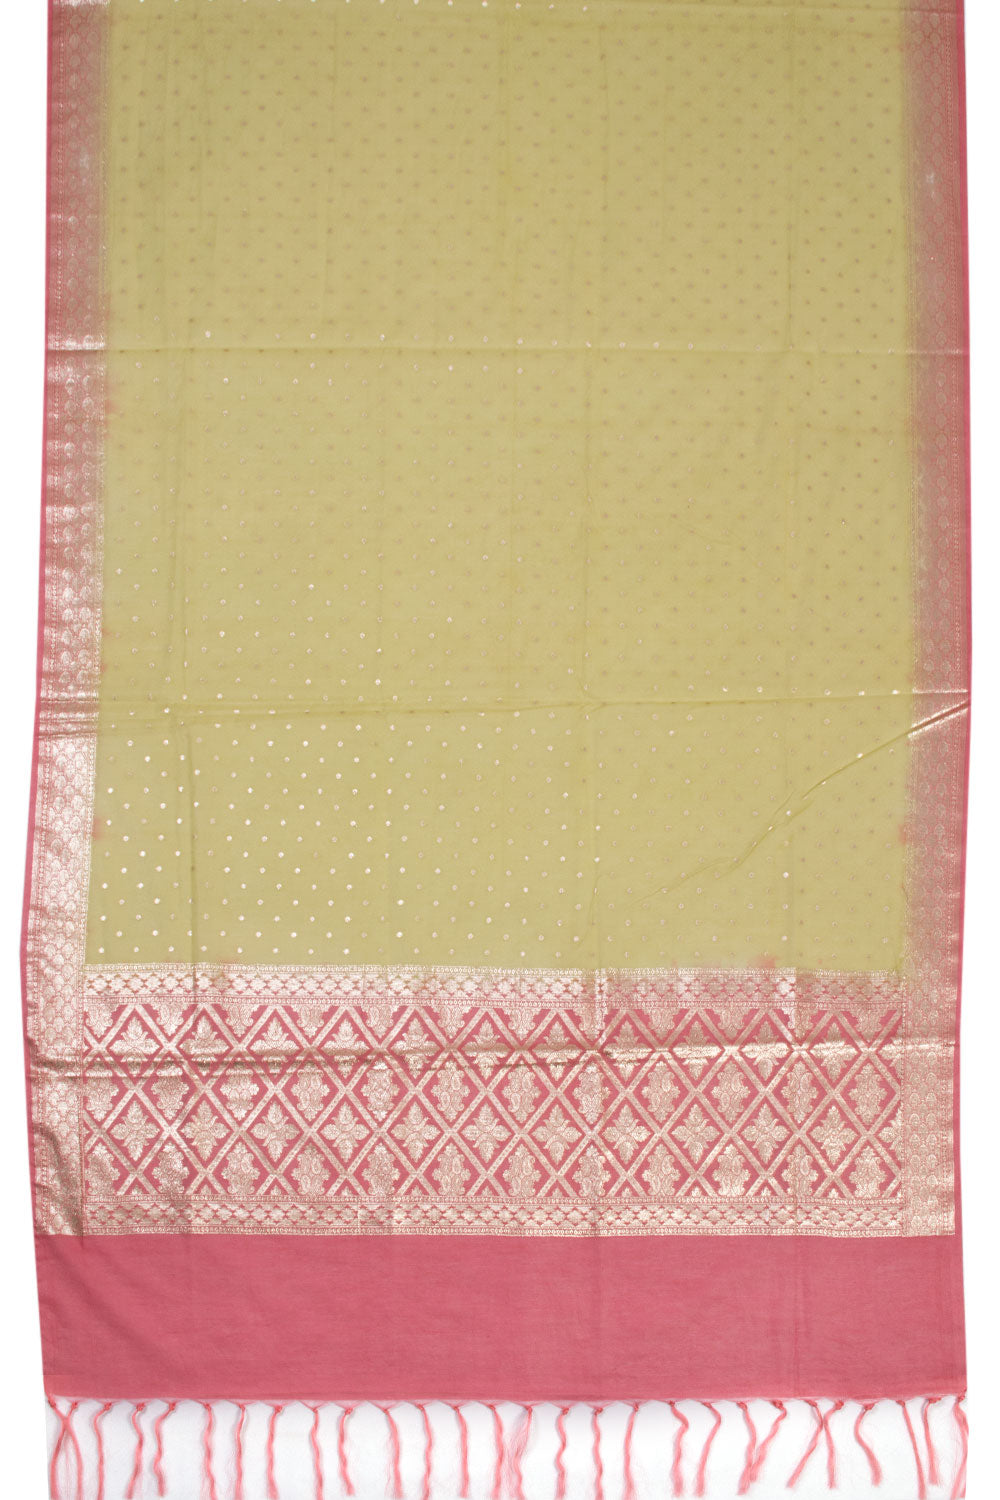 Cherry red 3-piece Banarasi Silk Salwar Suit Material 10070361